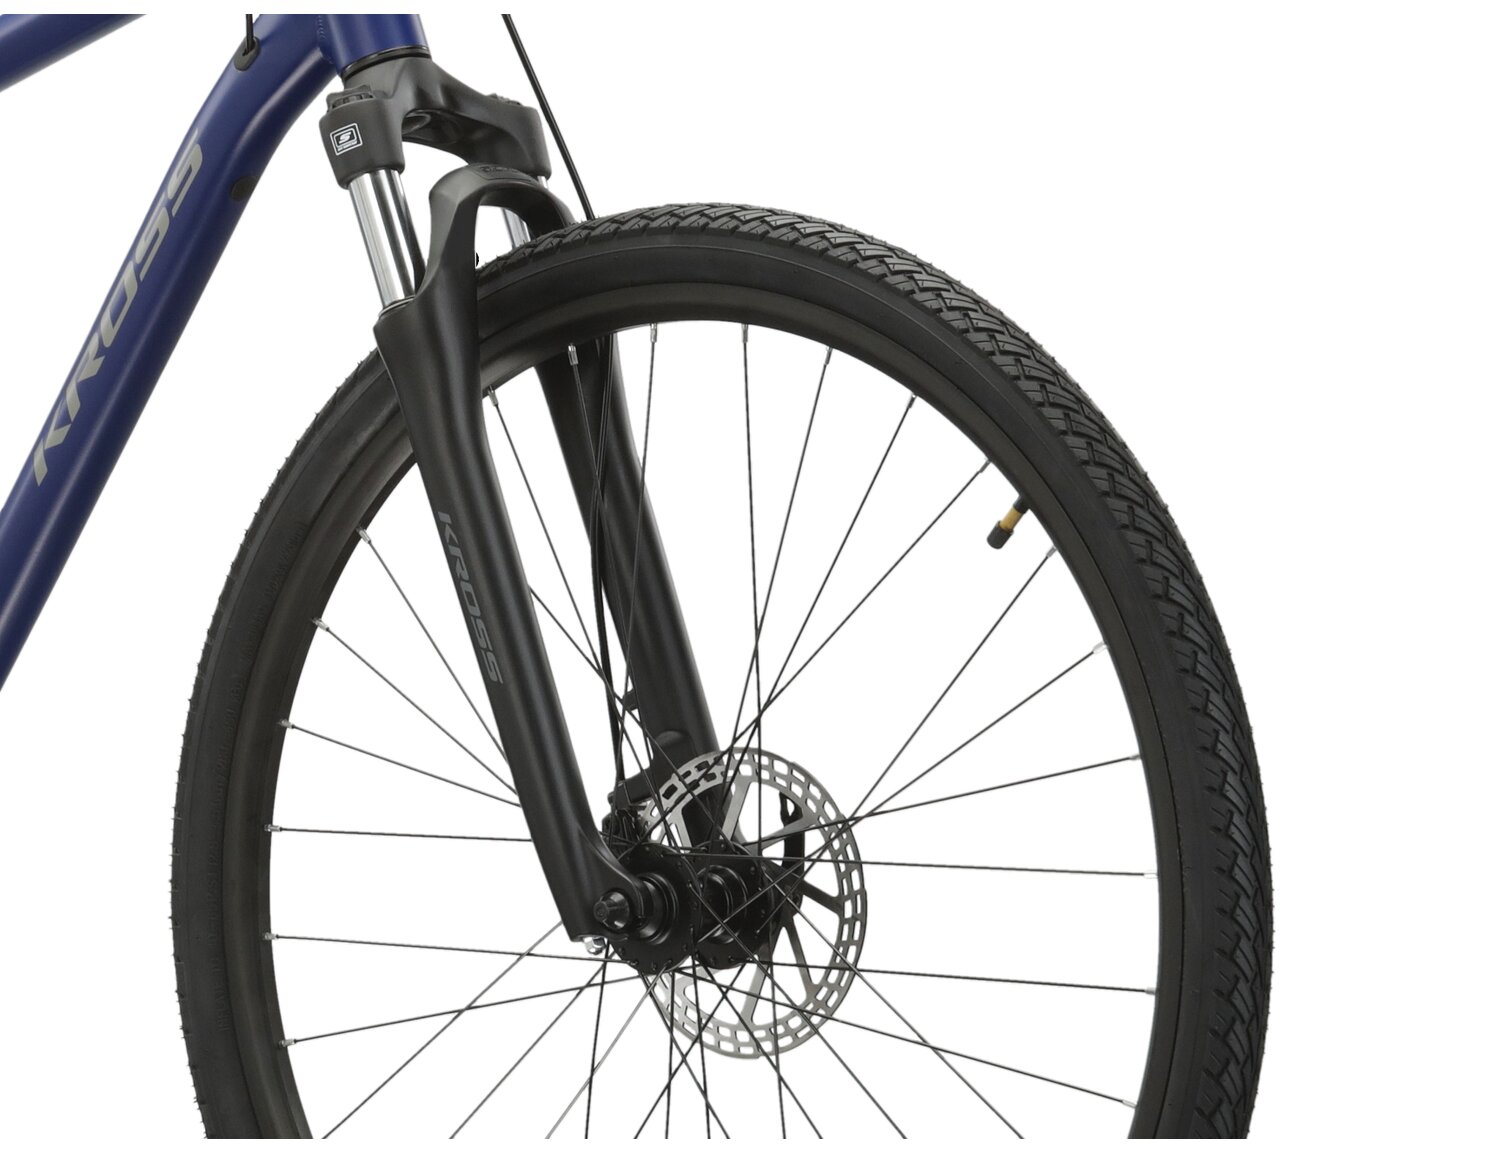 Aluminowa rama, amortyzowany widelec SR SUNTOUR NEX oraz opony Wanda w rowerze crossowym KROSS Evado 3.0 